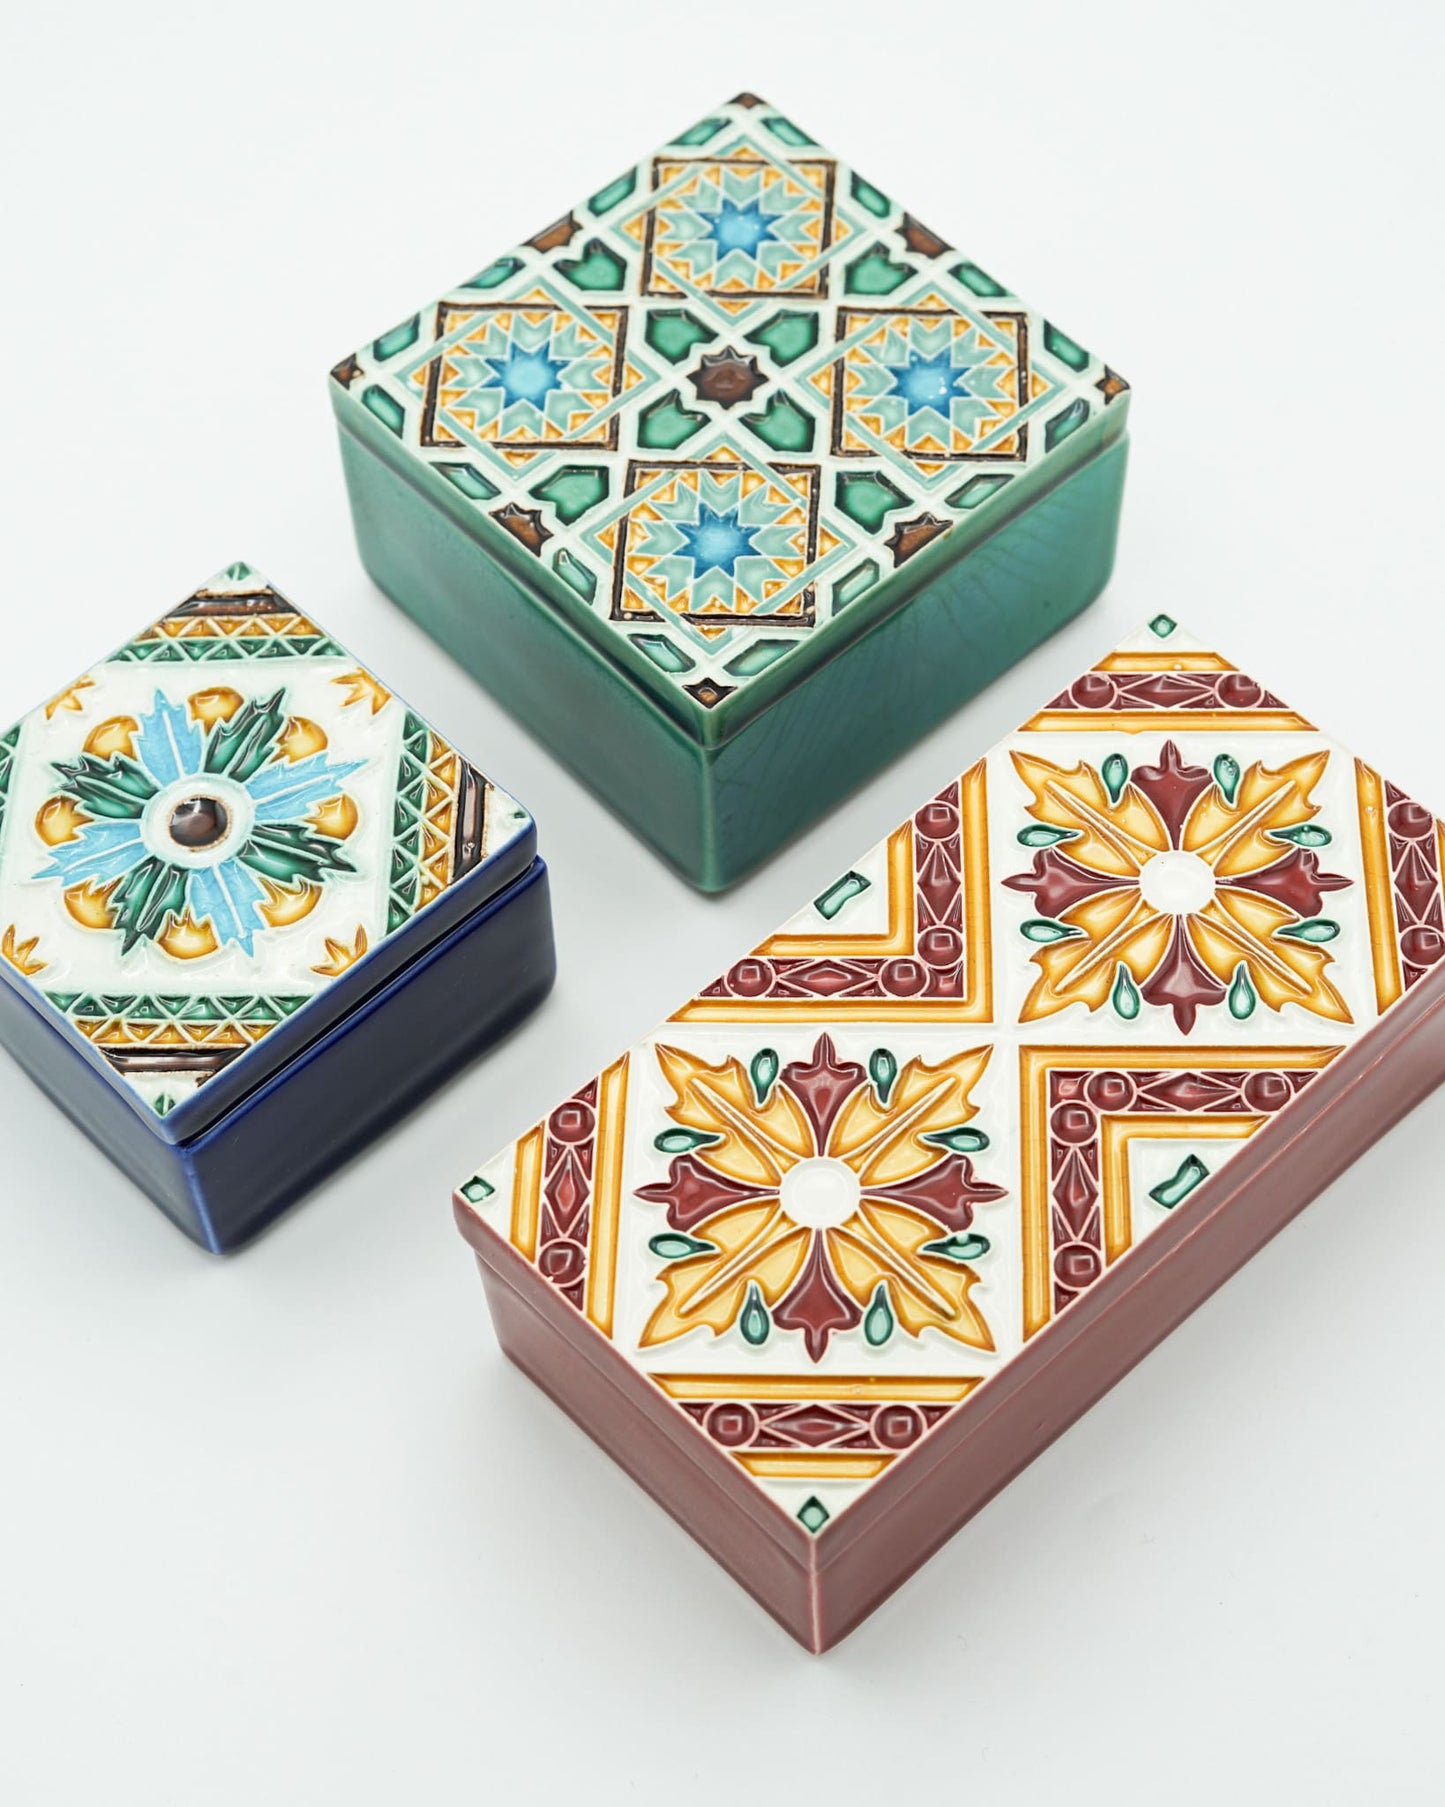 Caixa de Cerâmica Hispano-Árabe Grande